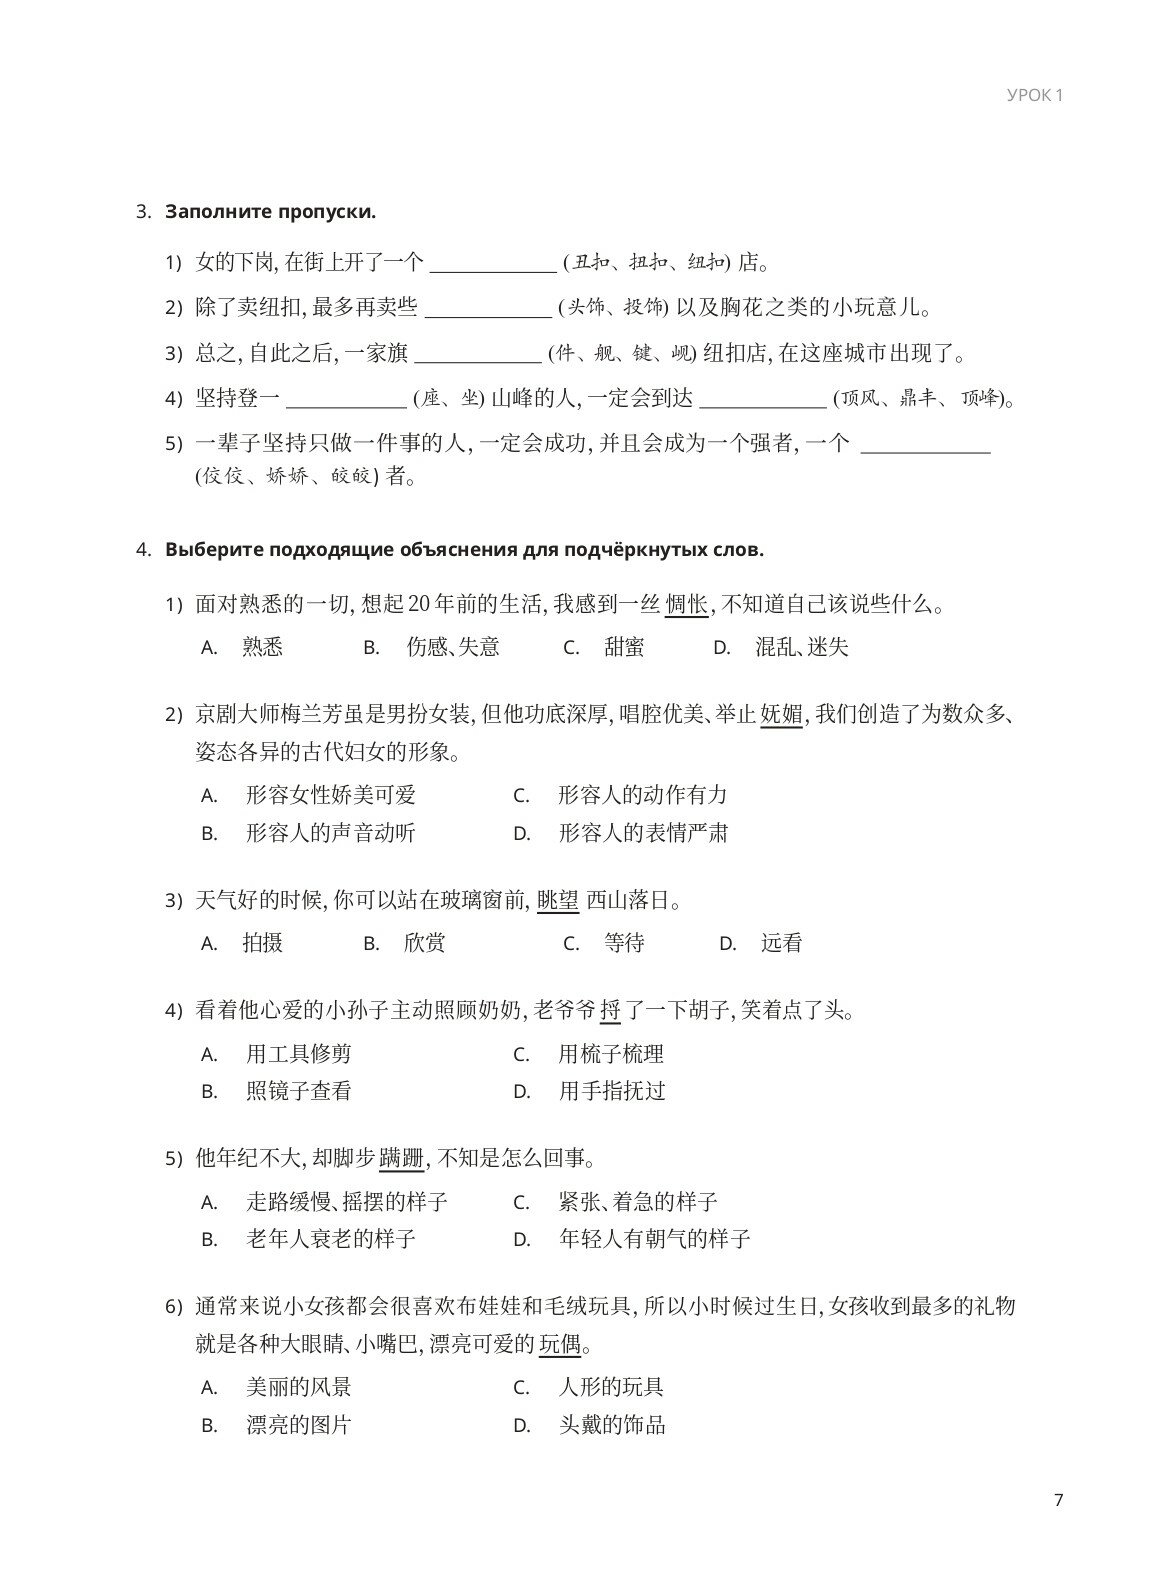 Деловой китайский язык. В 2-х частях. Часть 2. Письмо - фото №8